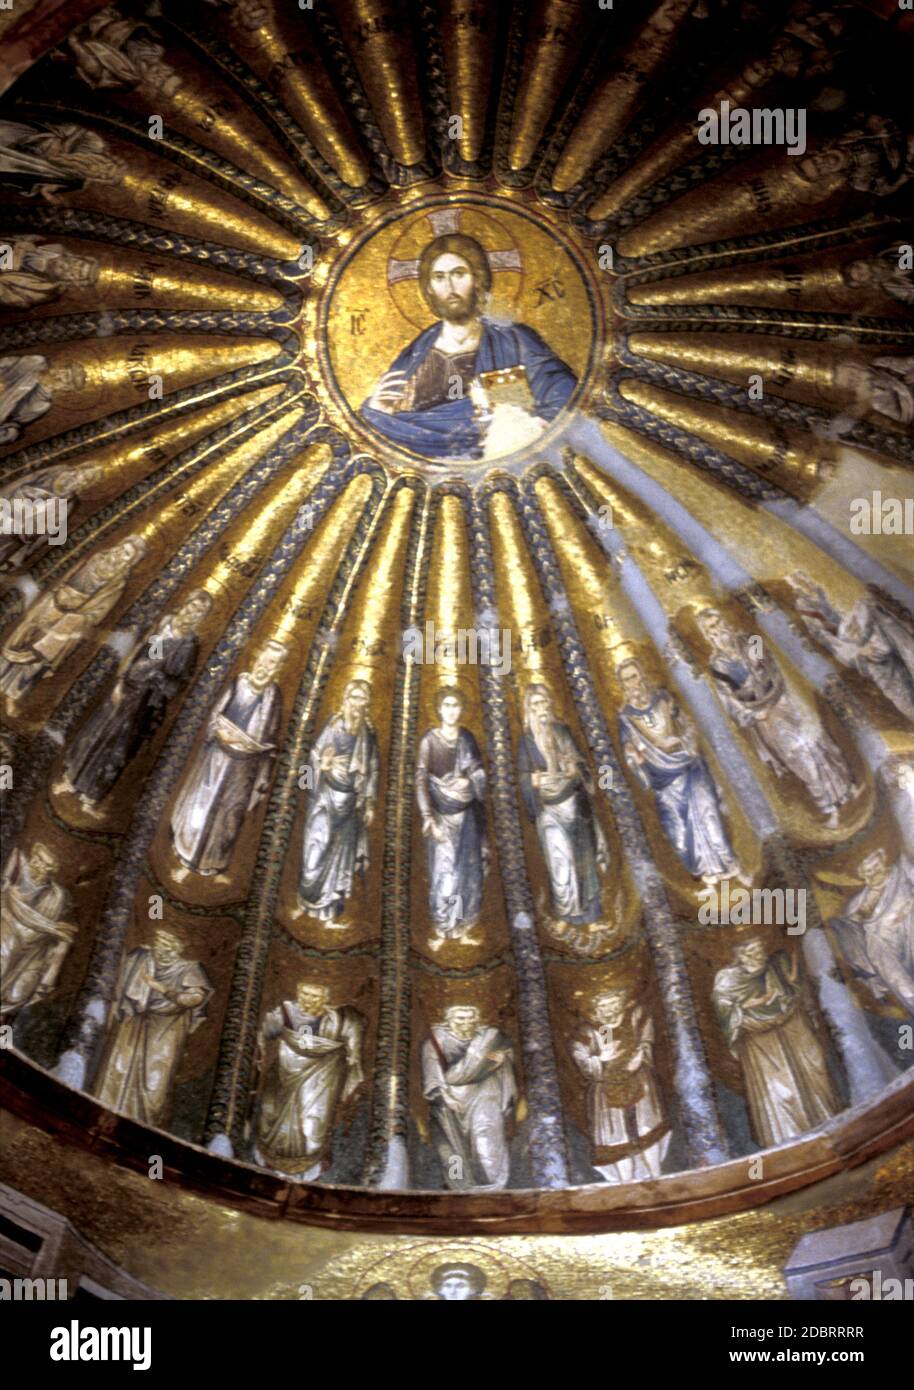 Mosaik von Christus Pantocrator, Herrscher des Universums, Südkuppel des inneren westlichen Narthex des Chora-Klosters, Istanbul, Türkei Stockfoto